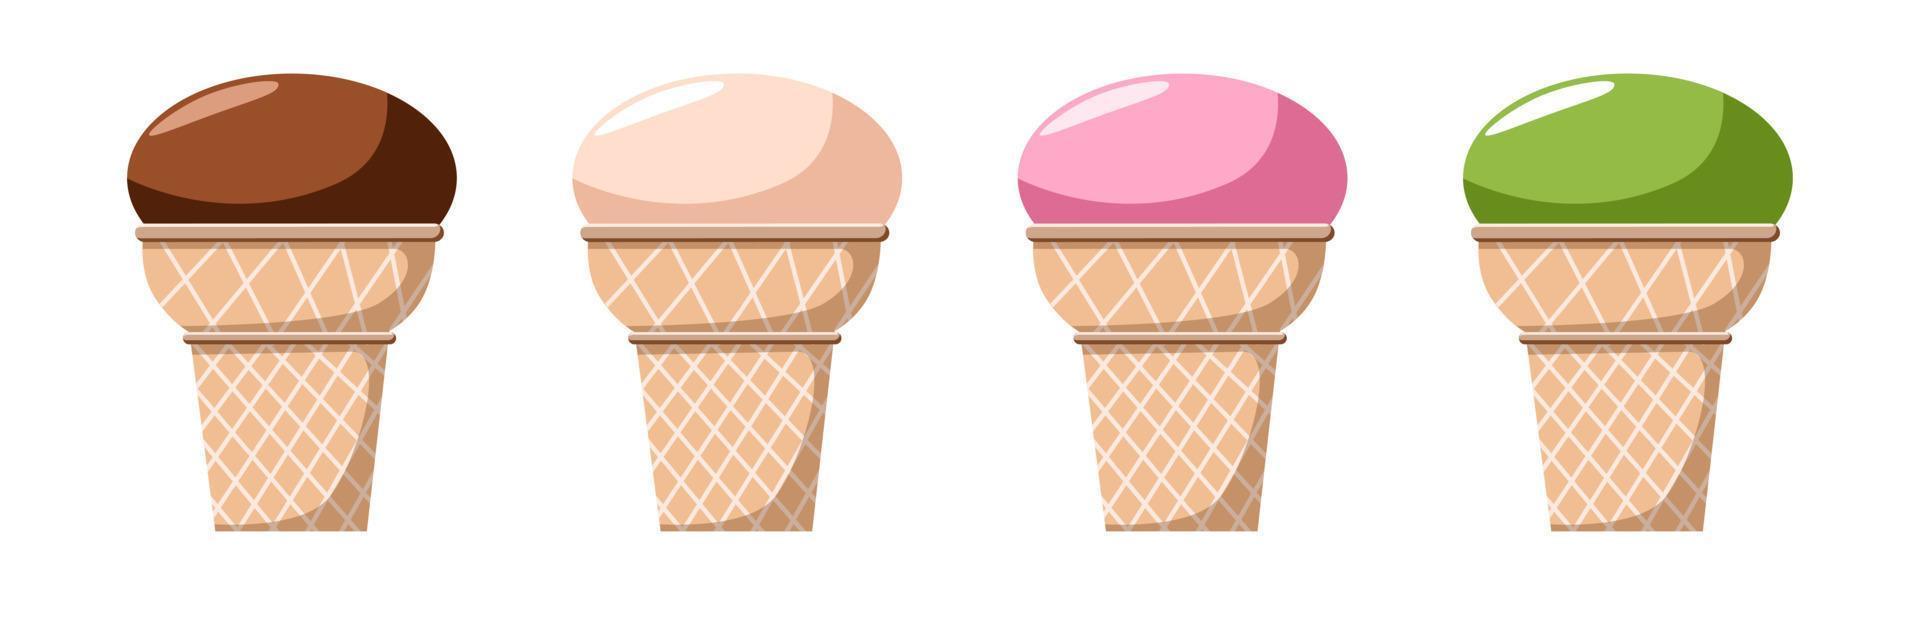 un juego de delicioso helado. dulce regalo de verano con diferentes sabores, helado preparado con diferentes rellenos en una taza de gofres. vector